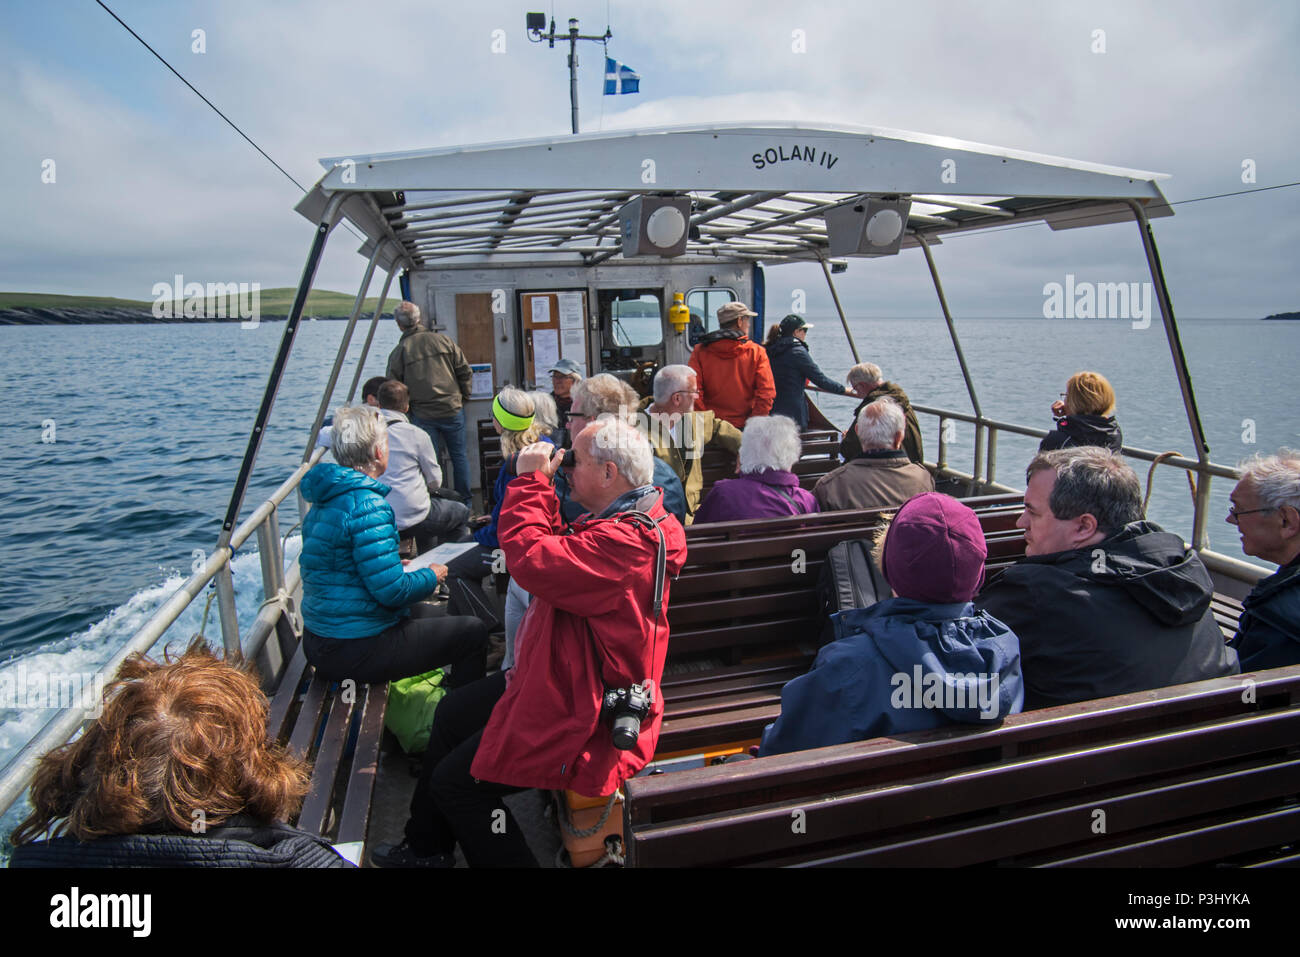 Anziani i turisti a bordo del passeggero aperto ferry boat Solan IV da Leebitton di Mousa la visione di uccelli marini, isole Shetland, Scotland, Regno Unito Foto Stock